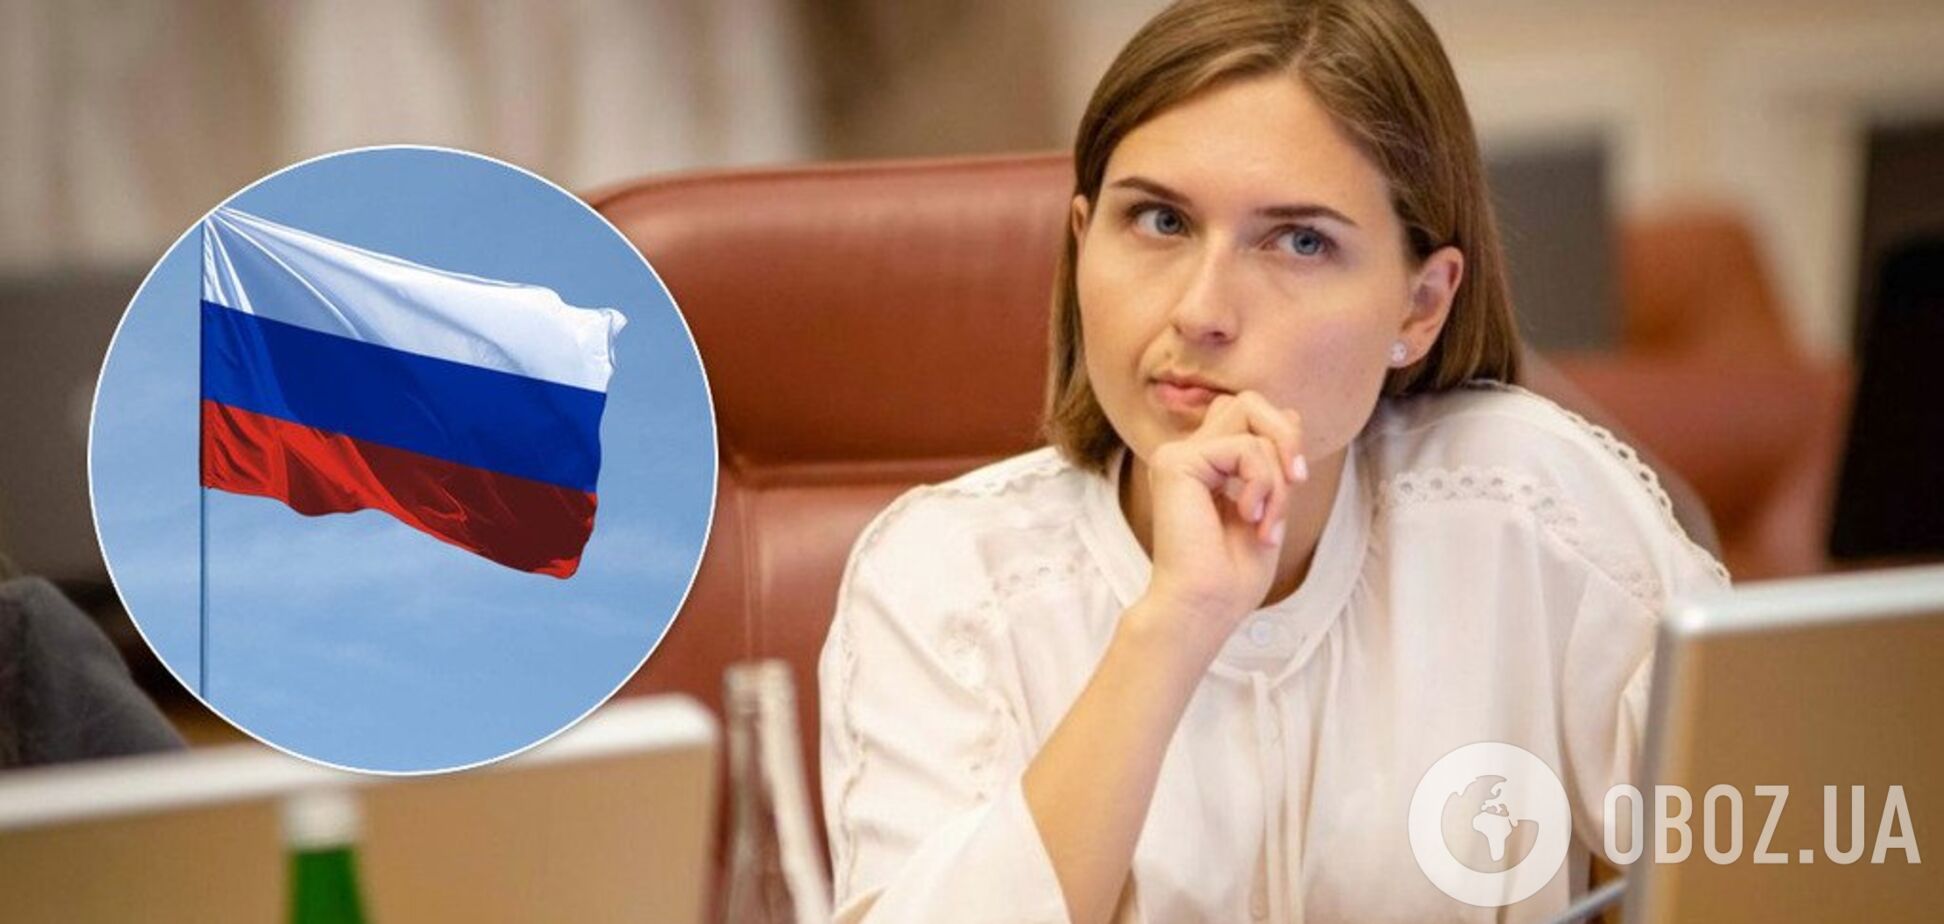 Новосад поймали на двойных стандартах из-за 'родного' русского языка